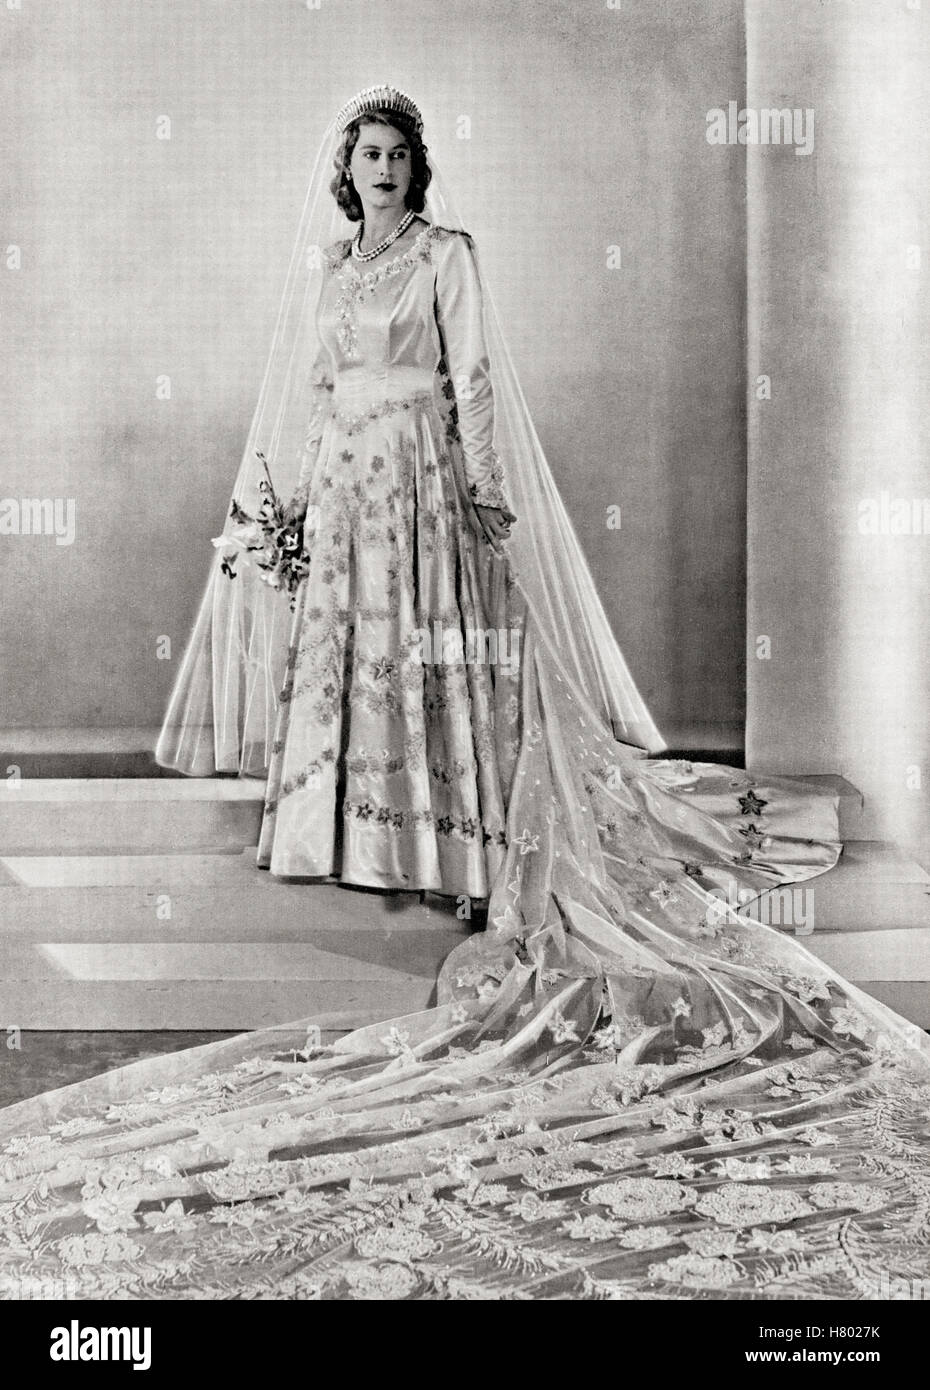 Principessa Elisabetta, futura regina Elisabetta II, 1926 - 2022, visto qui il suo giorno di nozze. Da una fotografia scattata nel 1947. Foto Stock